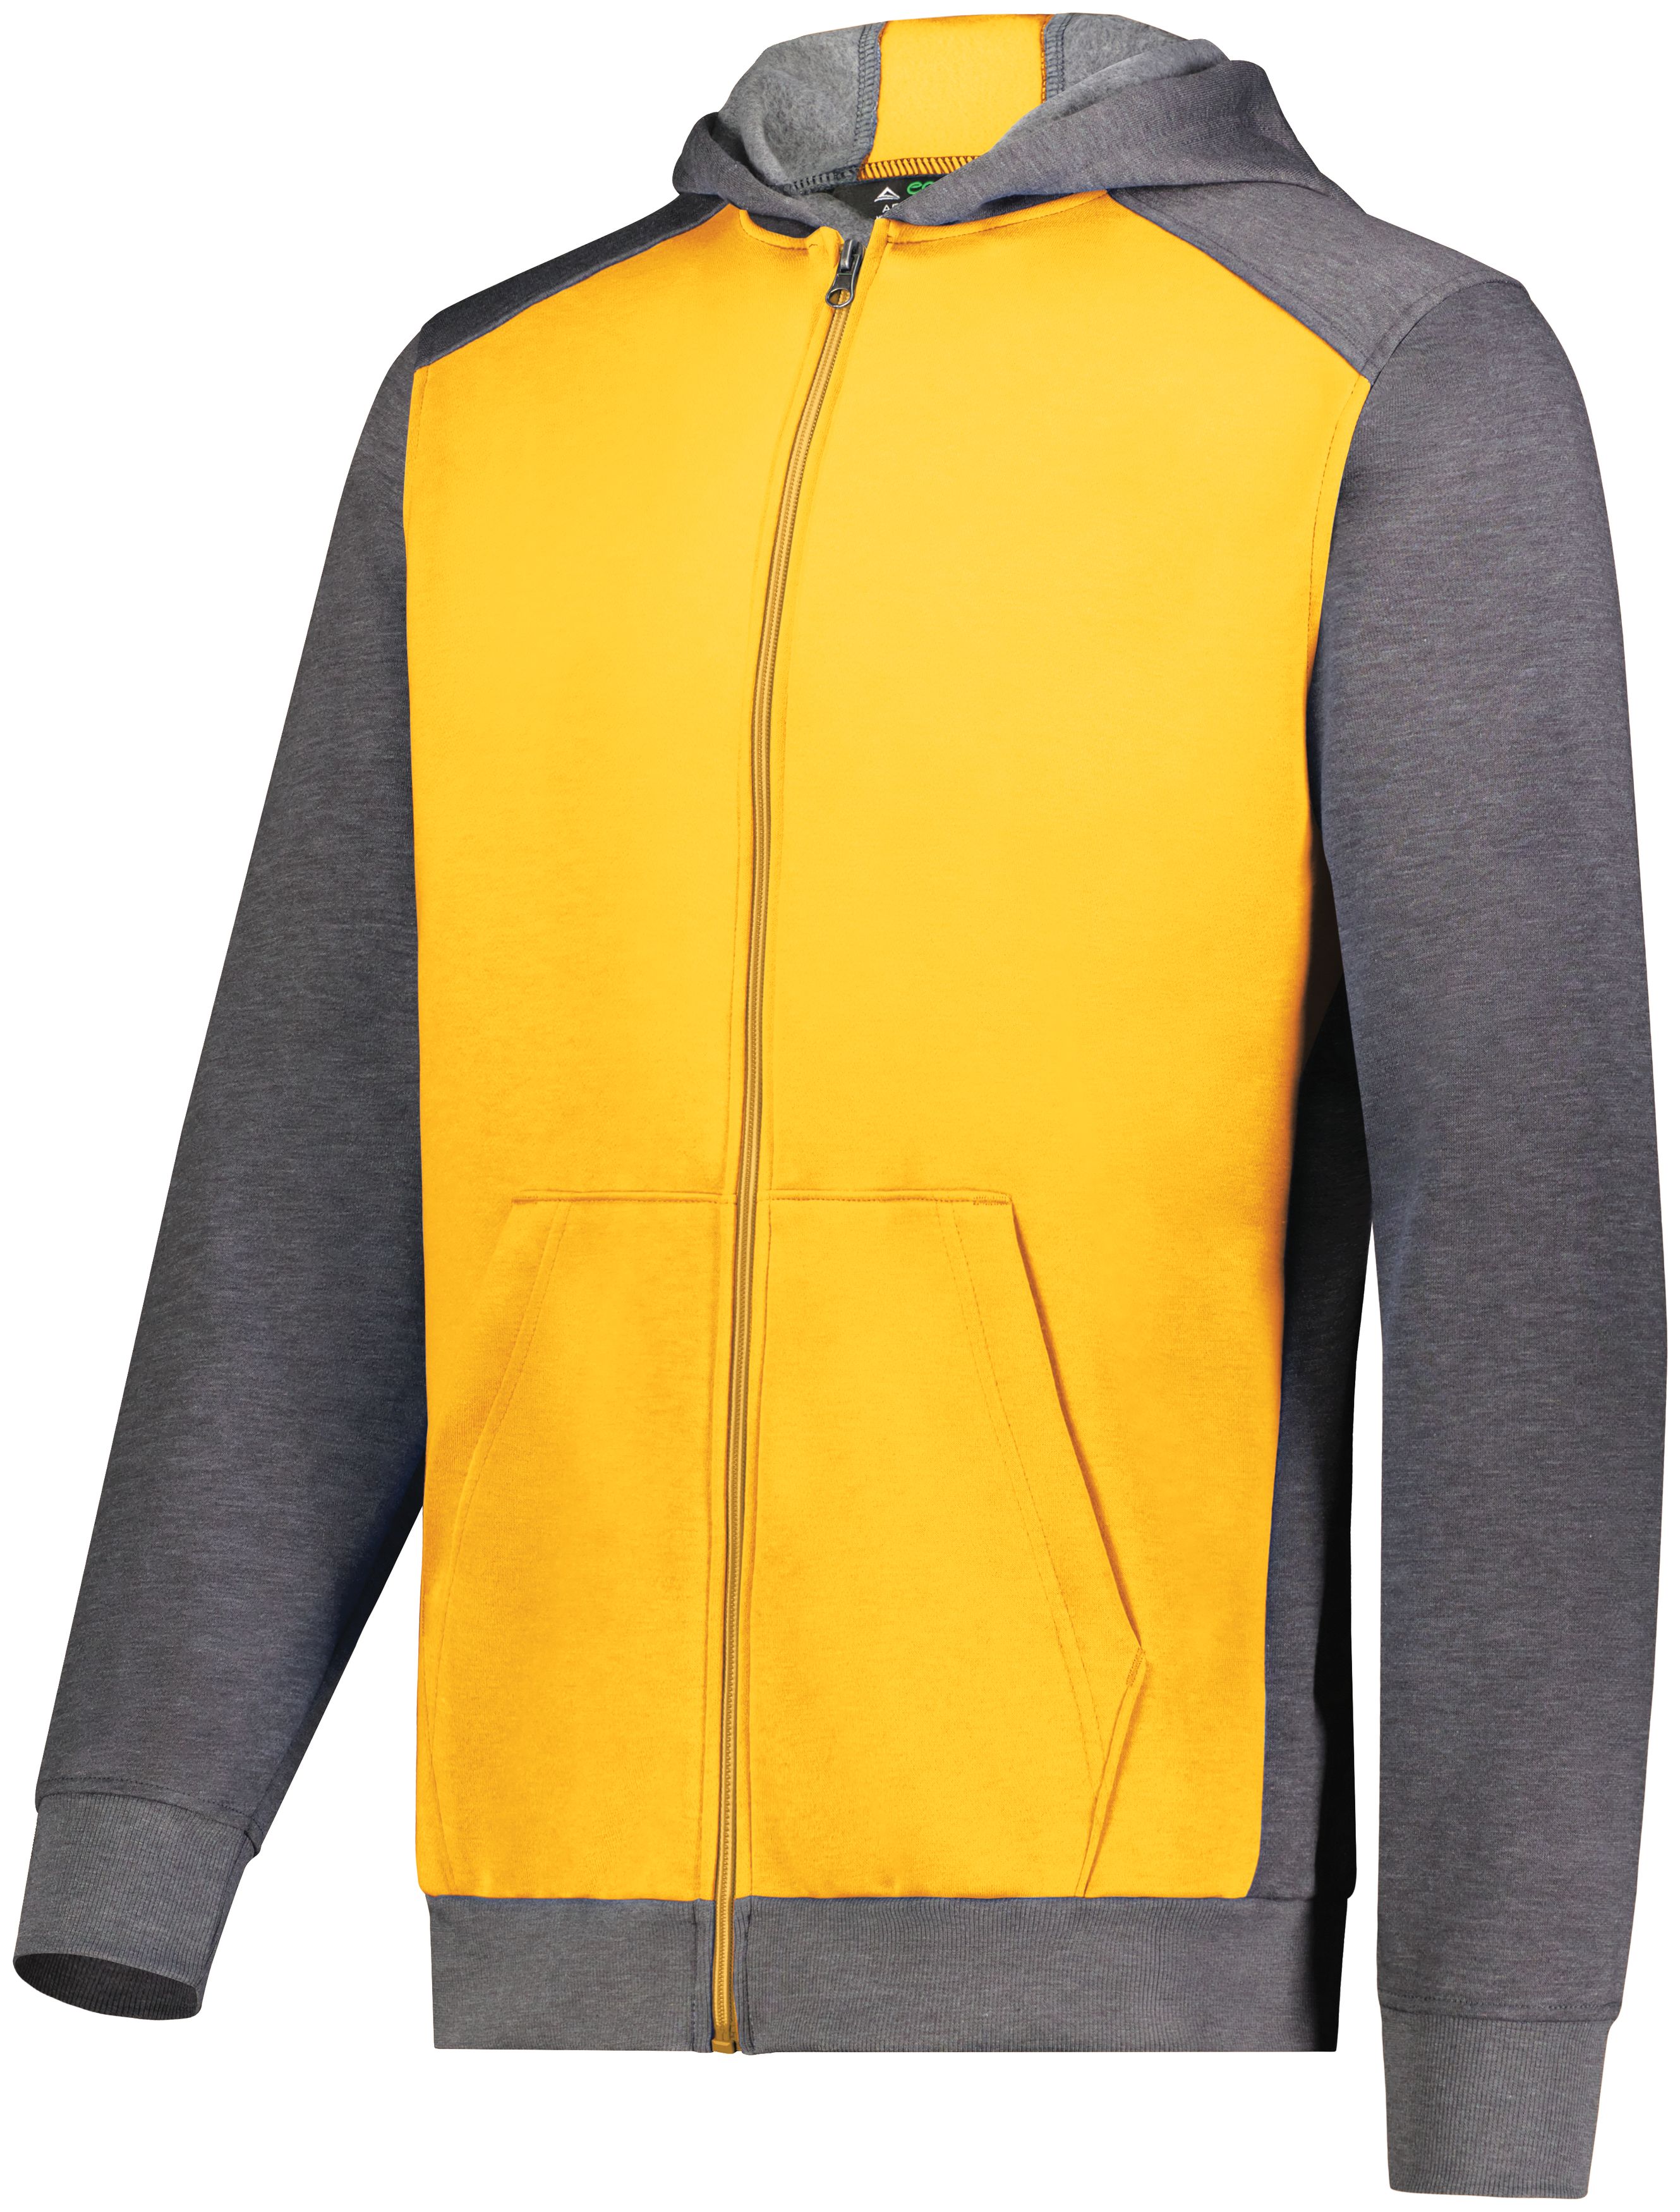 Augusta Sportswear 6900 - Youth Three-Season Fleece Full Zip Hoodie